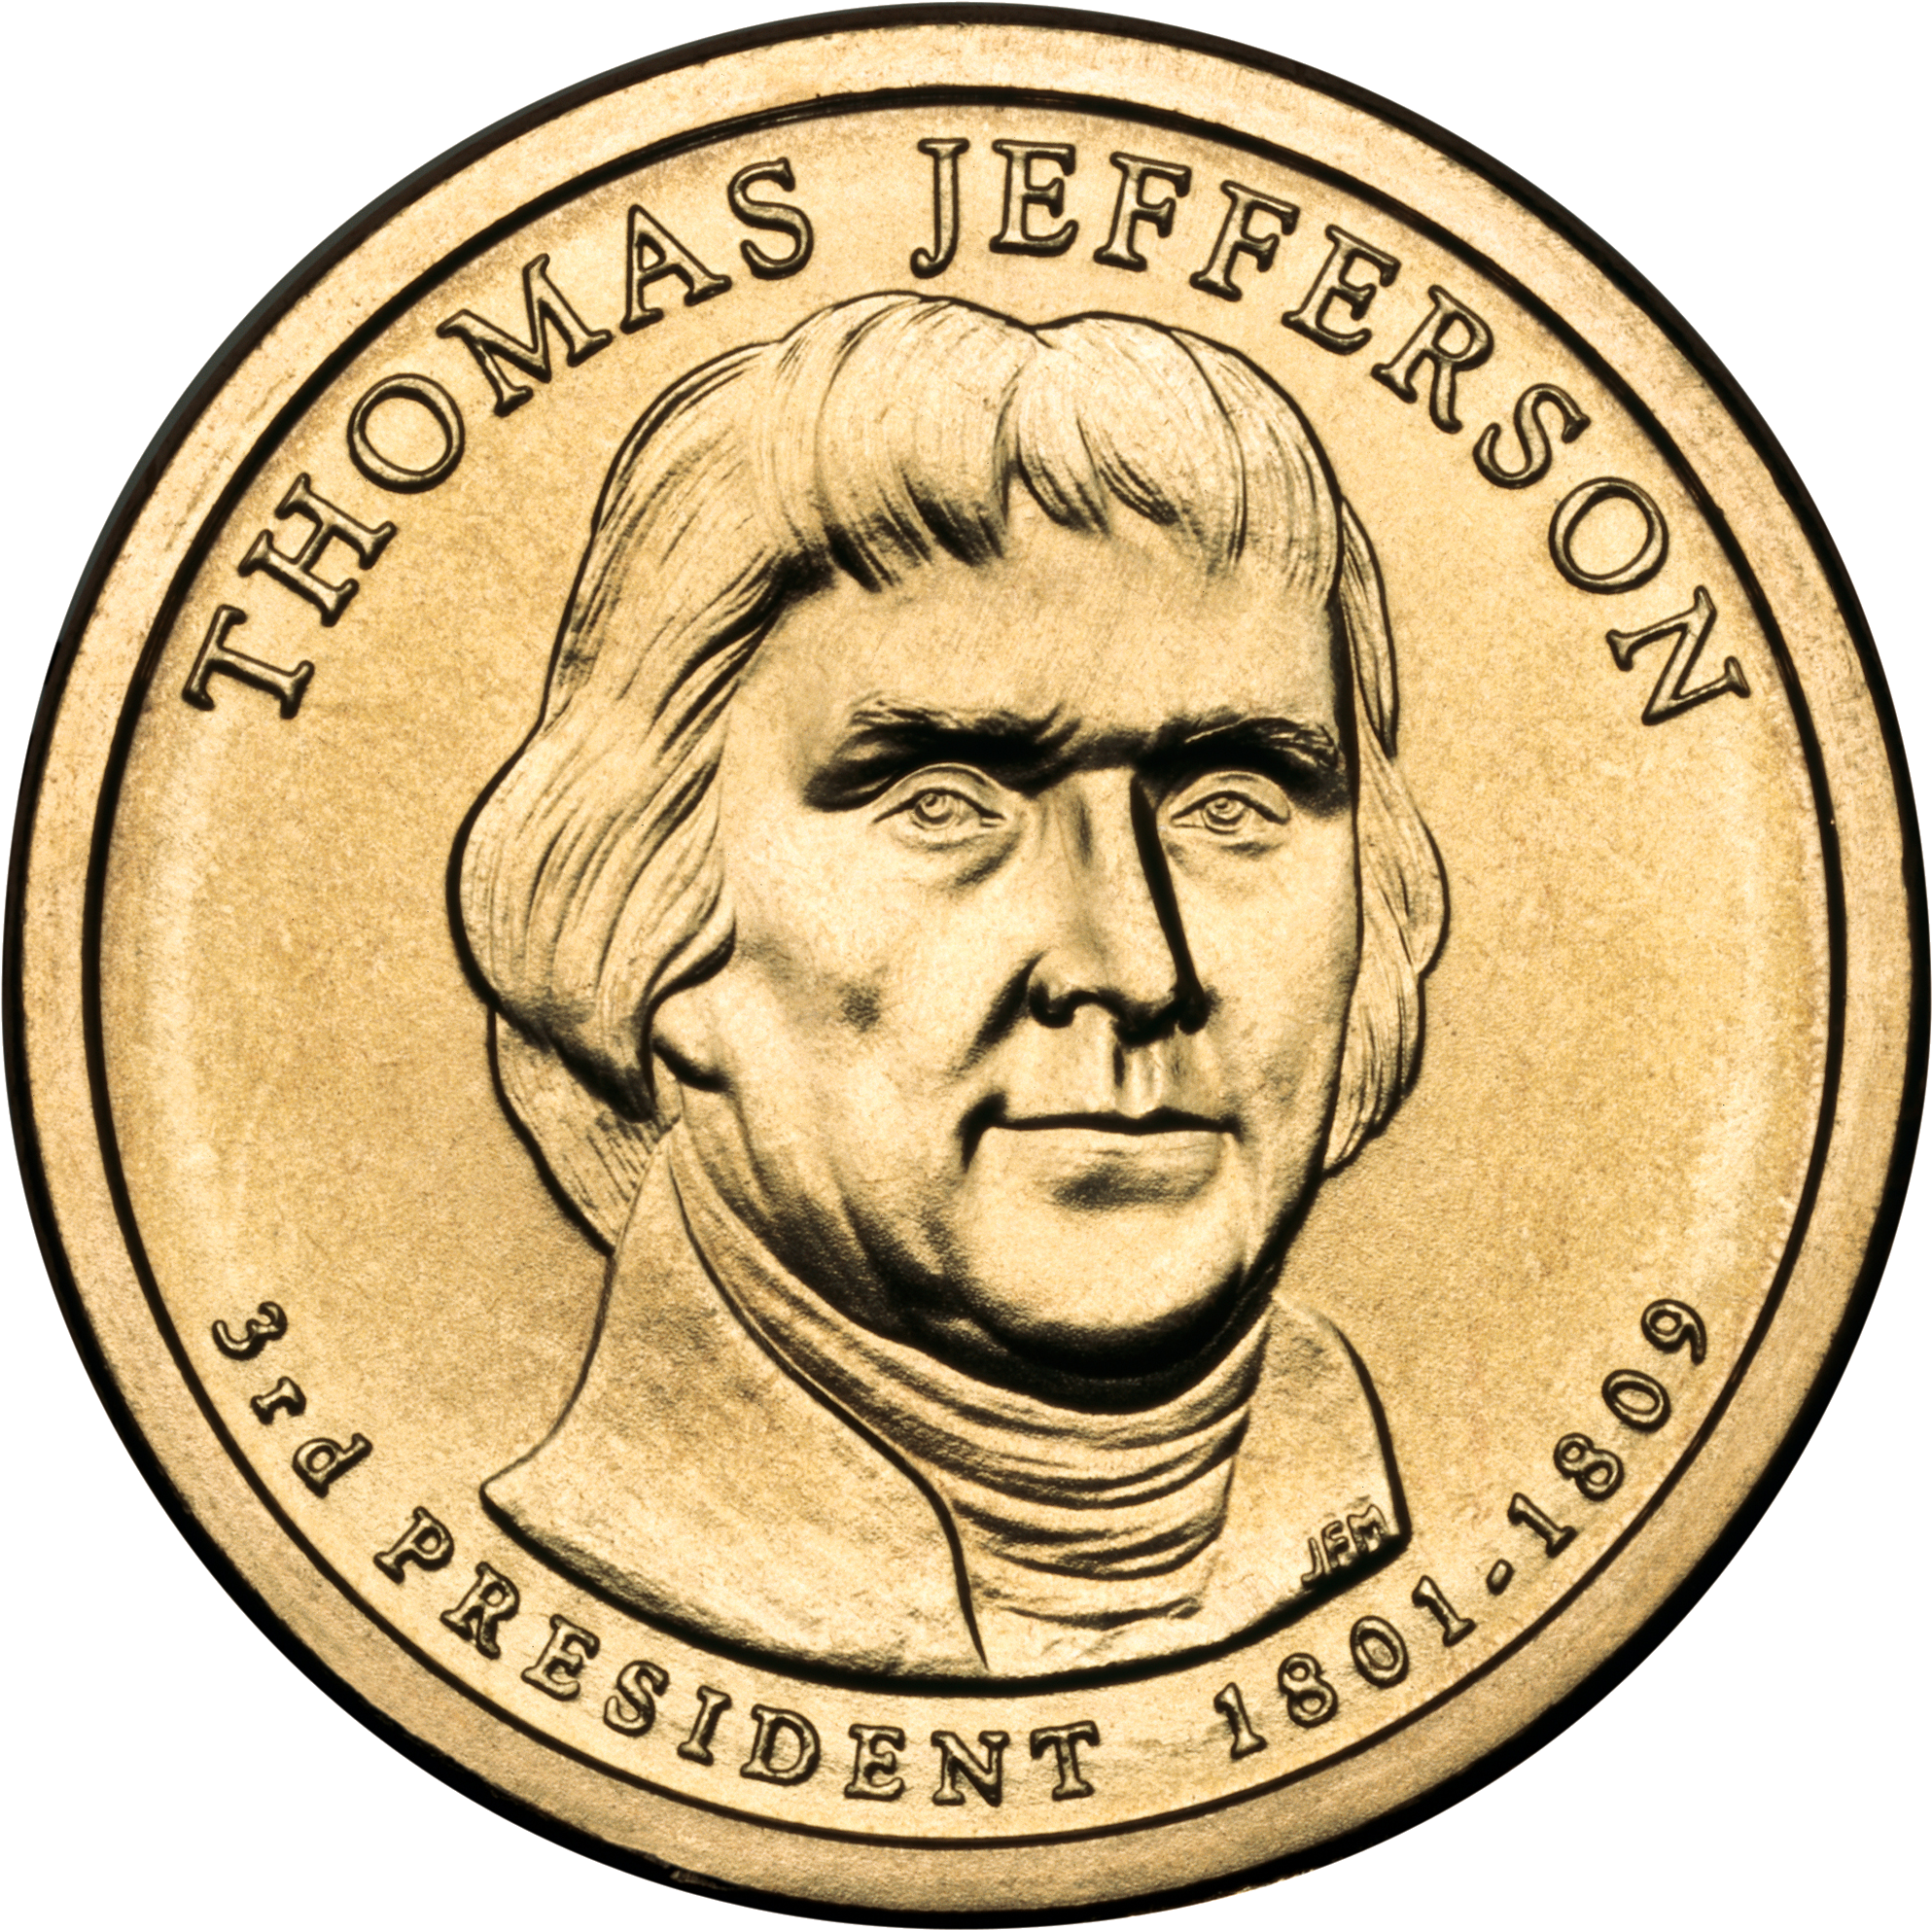 Thomas Jefferson Presidential $1 Coin Obverse - Thomas Jefferson (2000x2000)